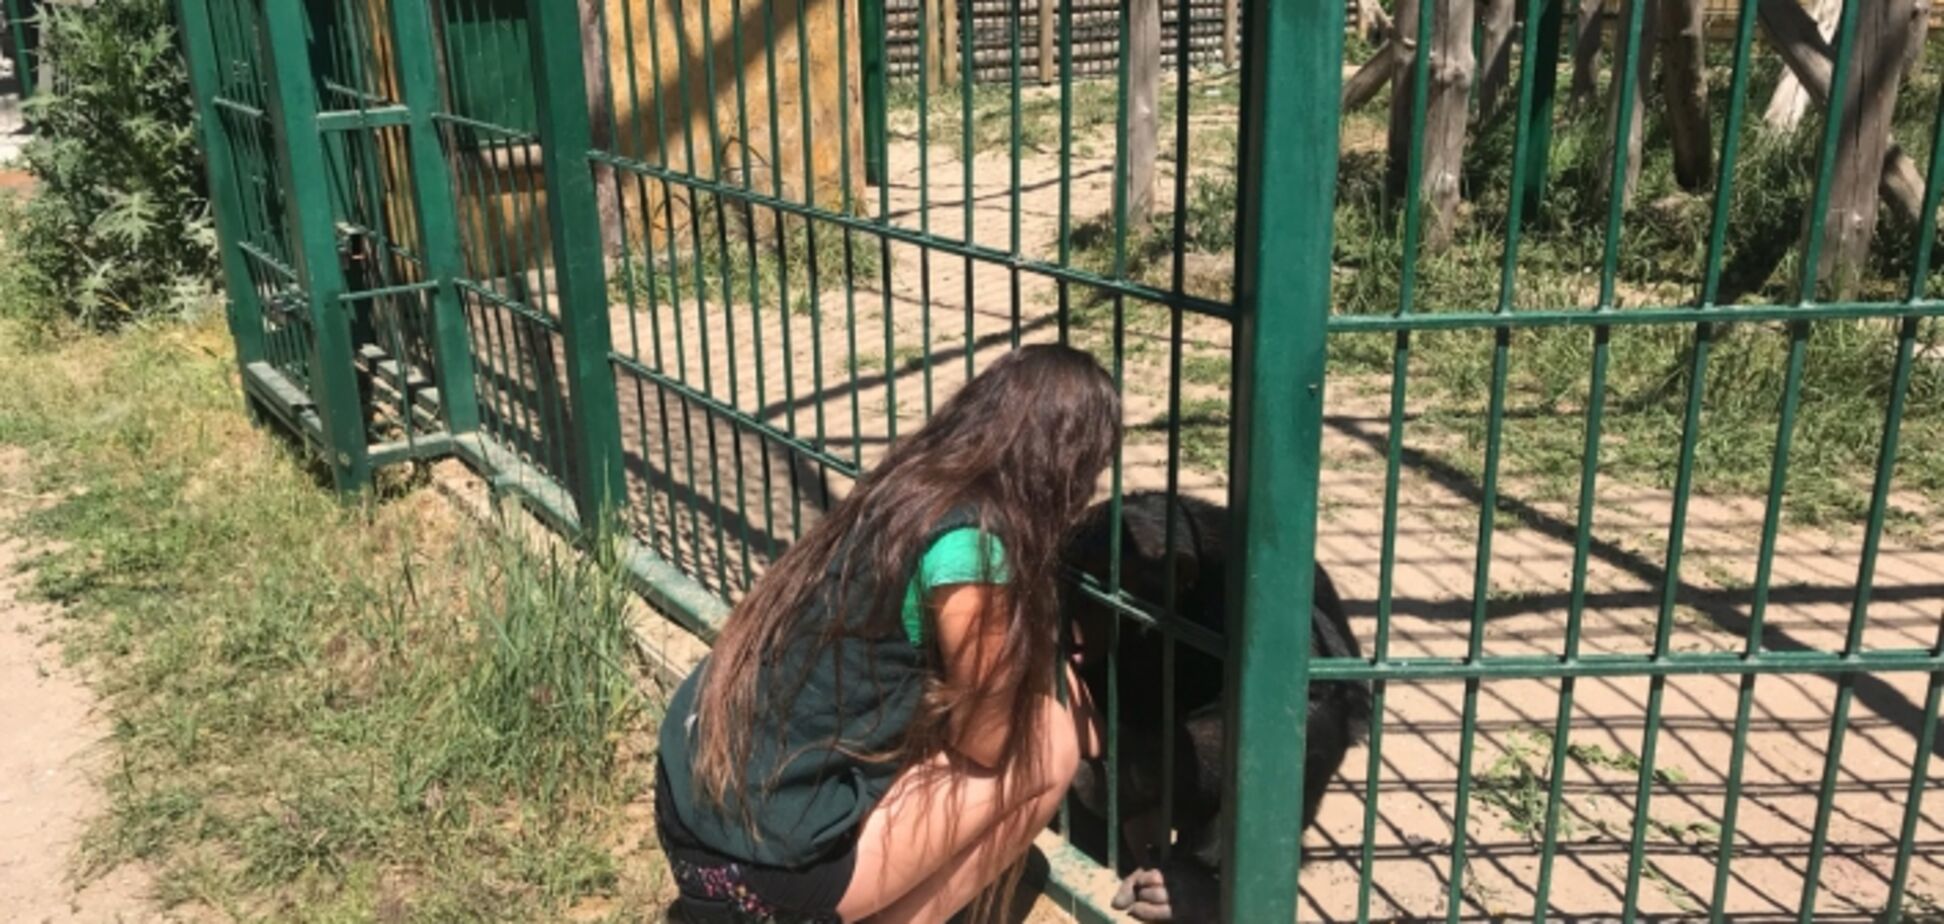 Мавпа 'зізналася' в любові співробітниці зоопарку Бердянська. Відеофакт